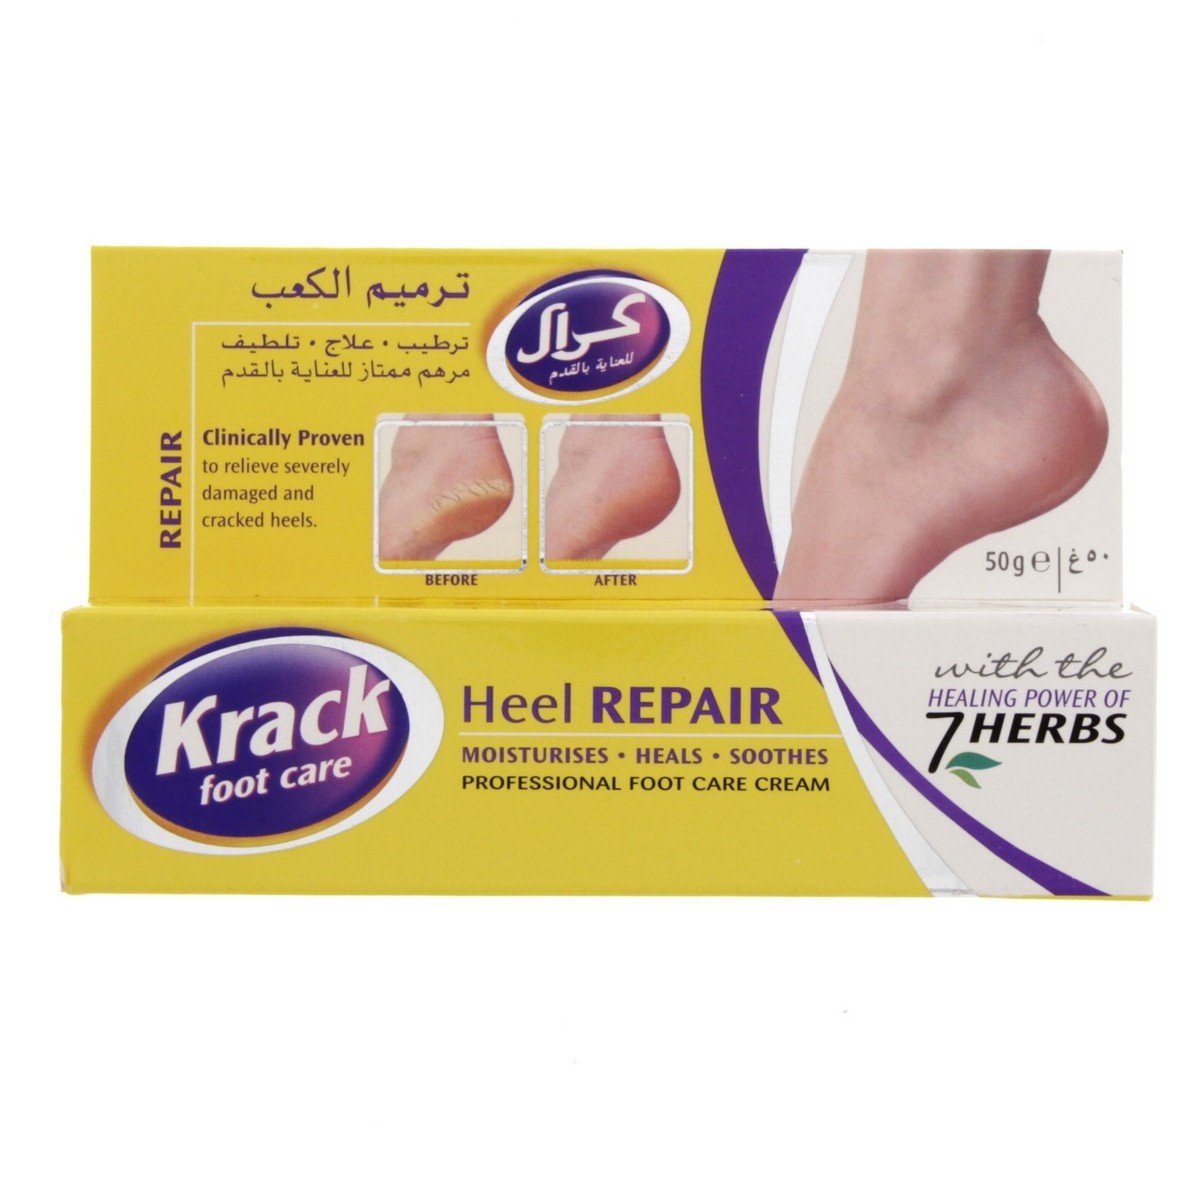 Krack Foot Care Heel Re pair Cream 50 g